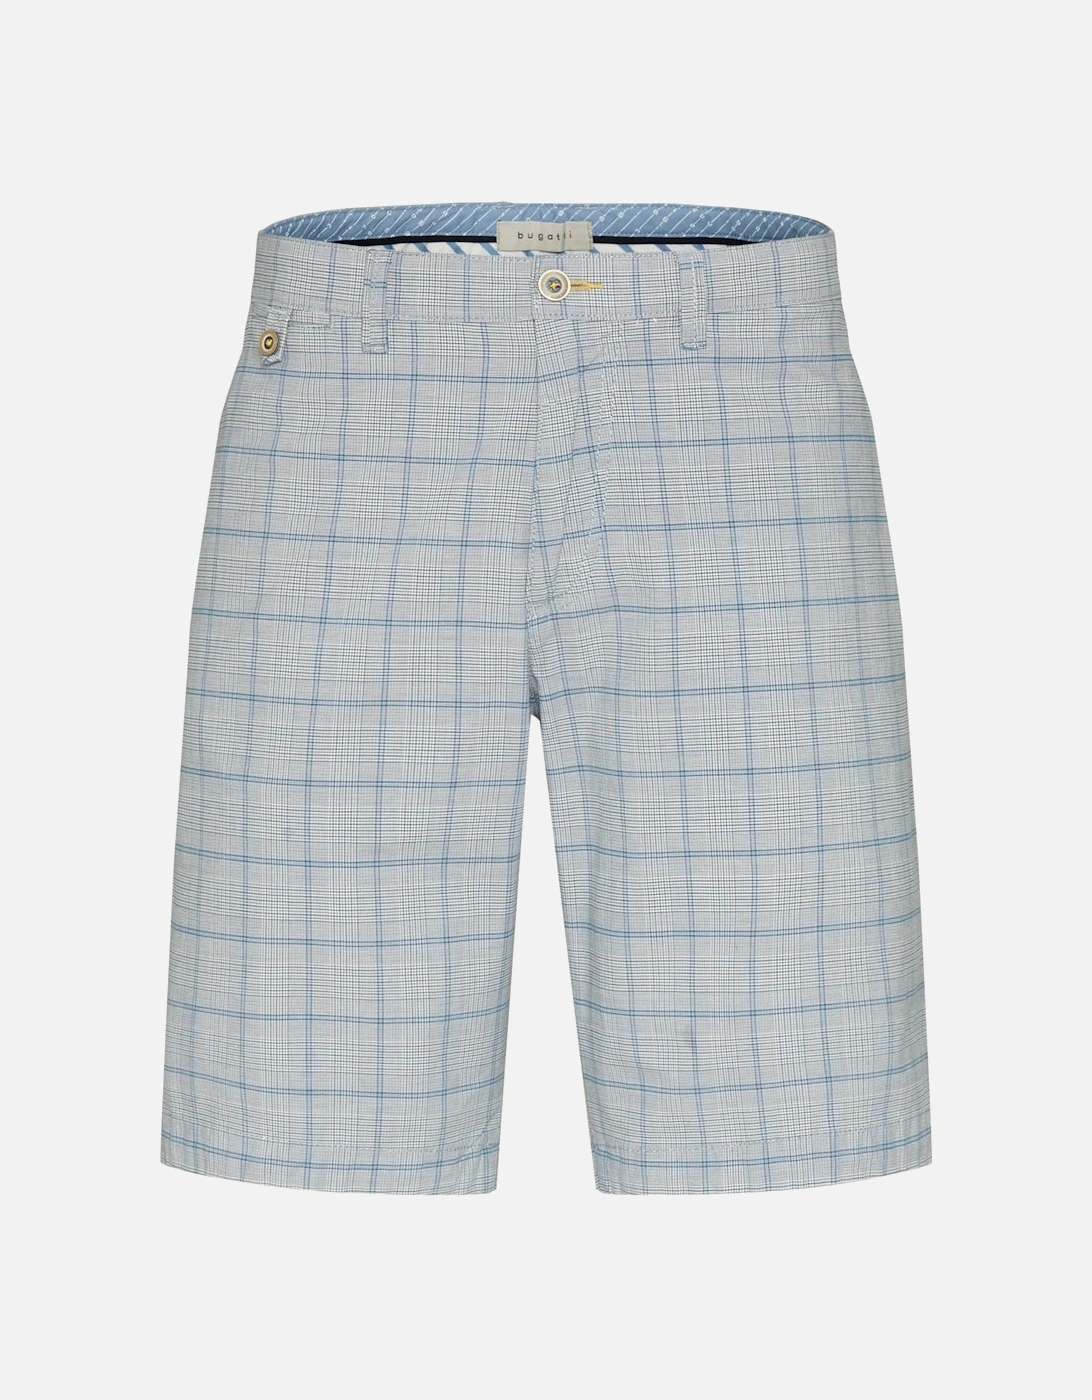 Mens Check Shorts (Blue), 3 of 2